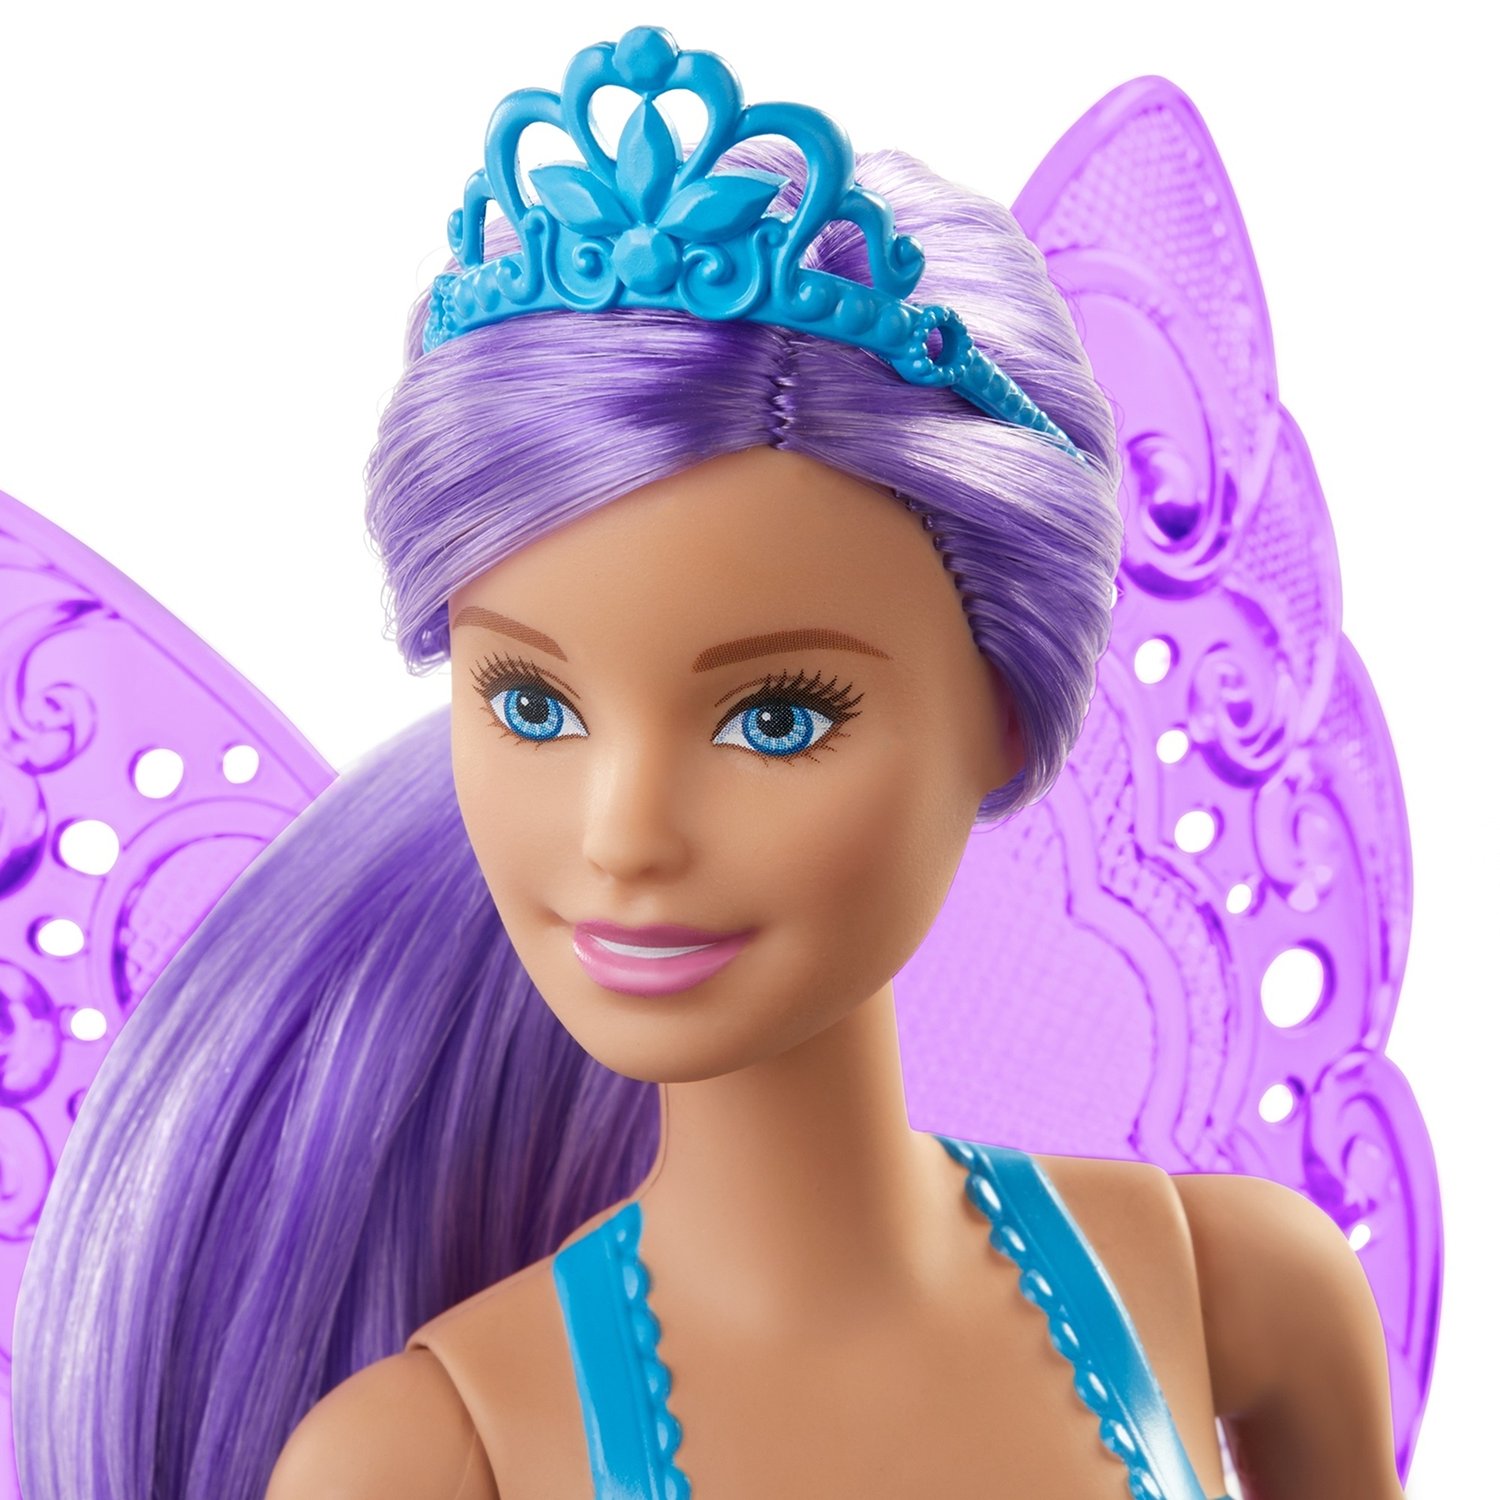 Кукла Barbie Dreamtopia Фея, 30 см, GJK00